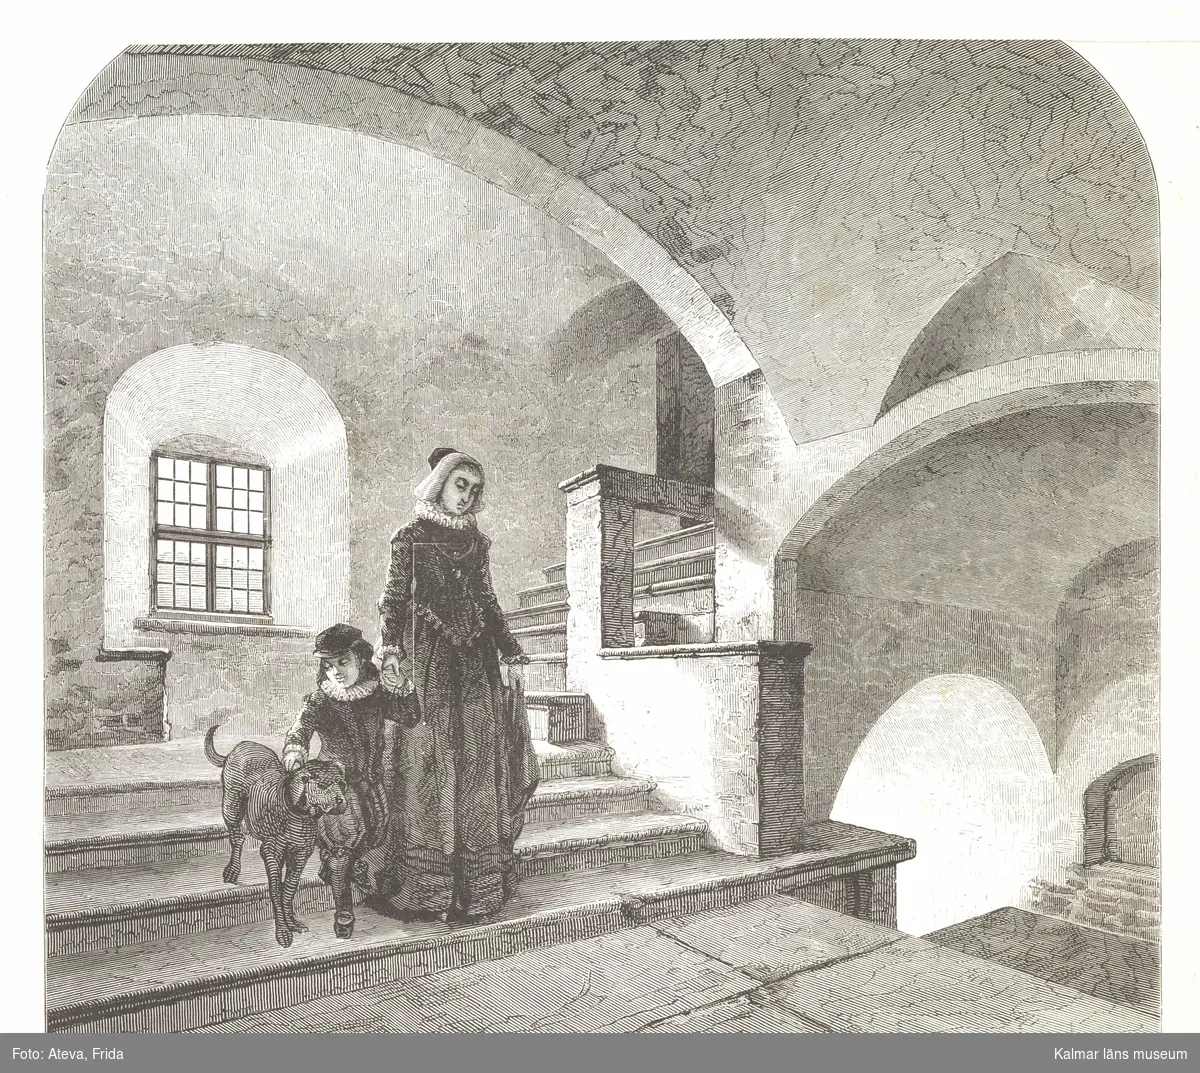 Kungstrappan i Kalmar slott. I trappan går en kvinna med en pojke och en hund.